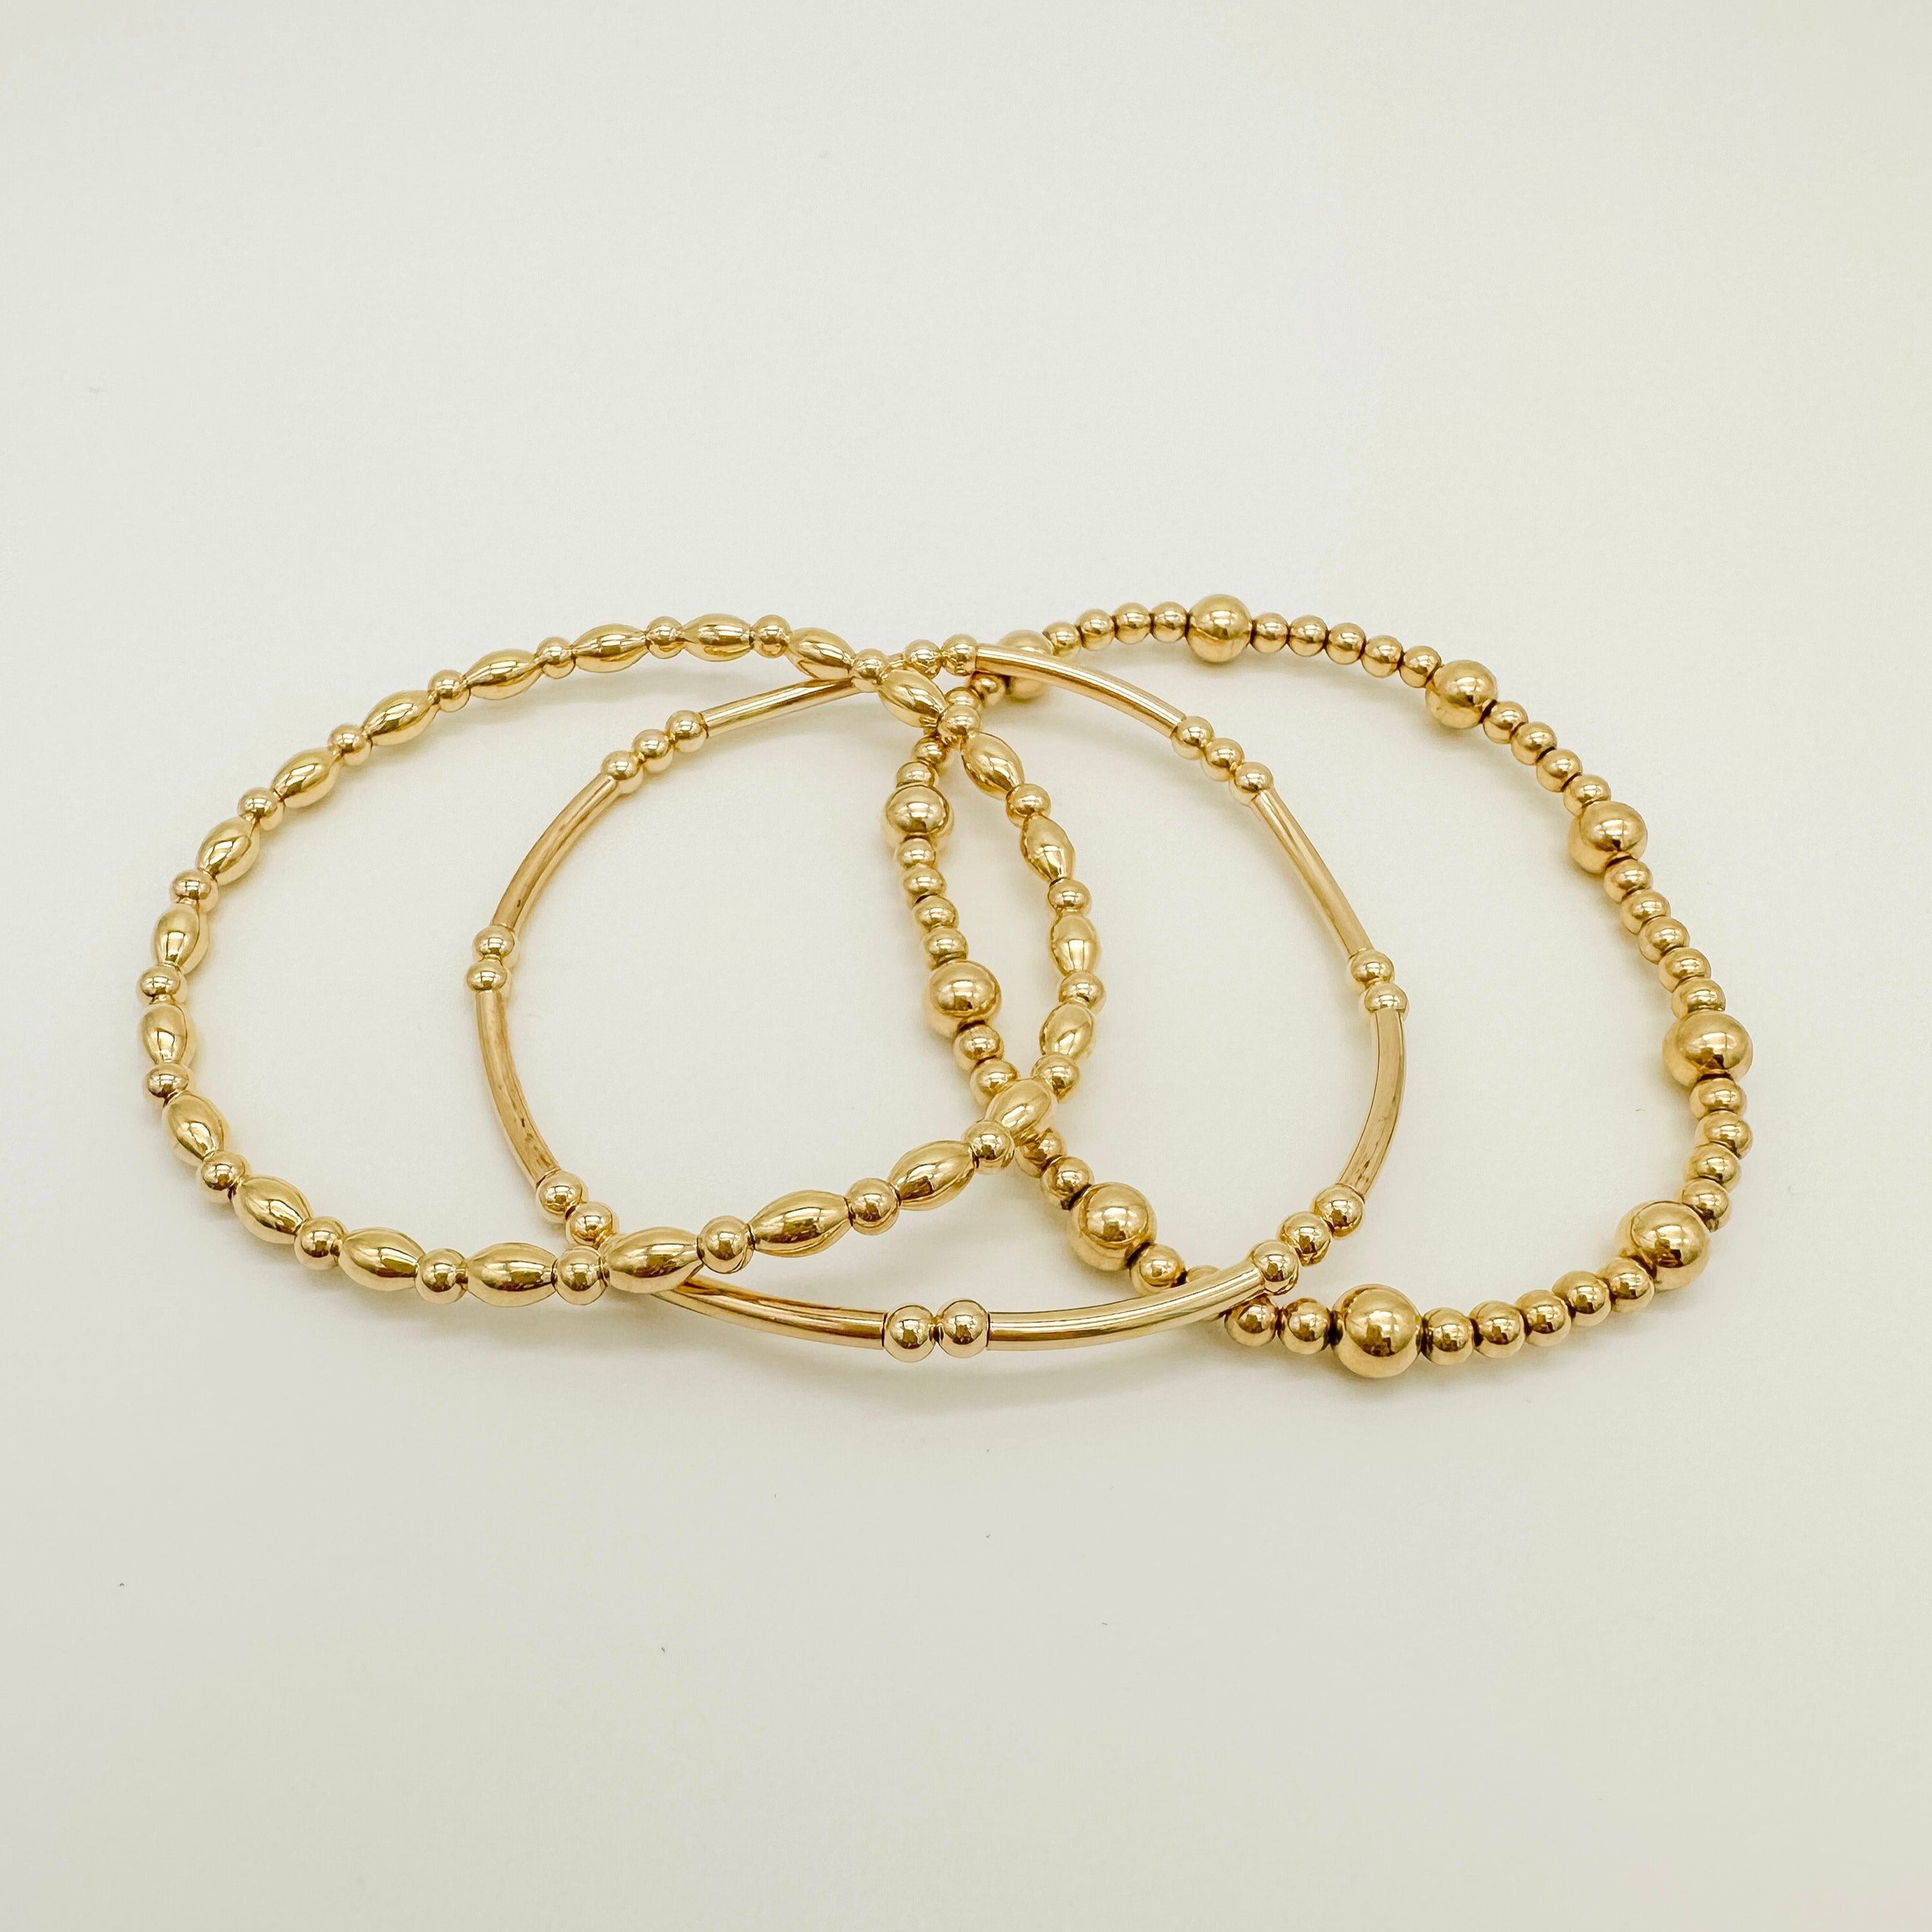 gold filled bracelet / stacking bracelet / gold-filled beaded bracelet / permanent bracelet / beaded bracelet